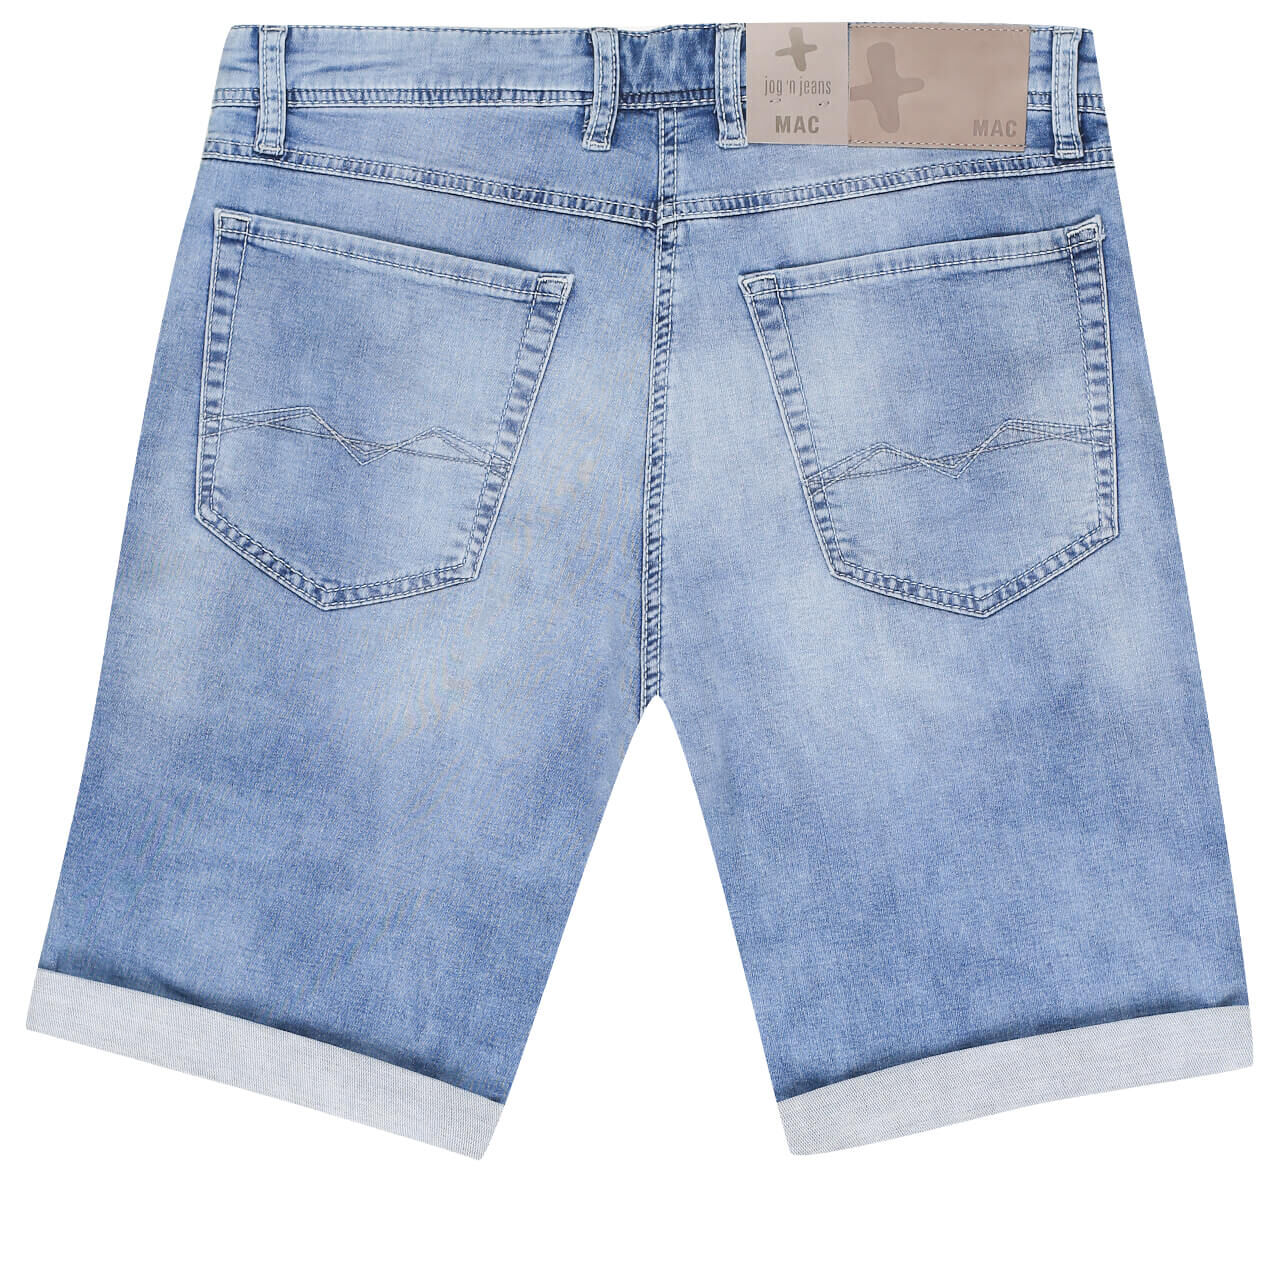 MAC Jeans Jogn Bermuda für Herren in Hellblau verwaschen, FarbNr.: H230